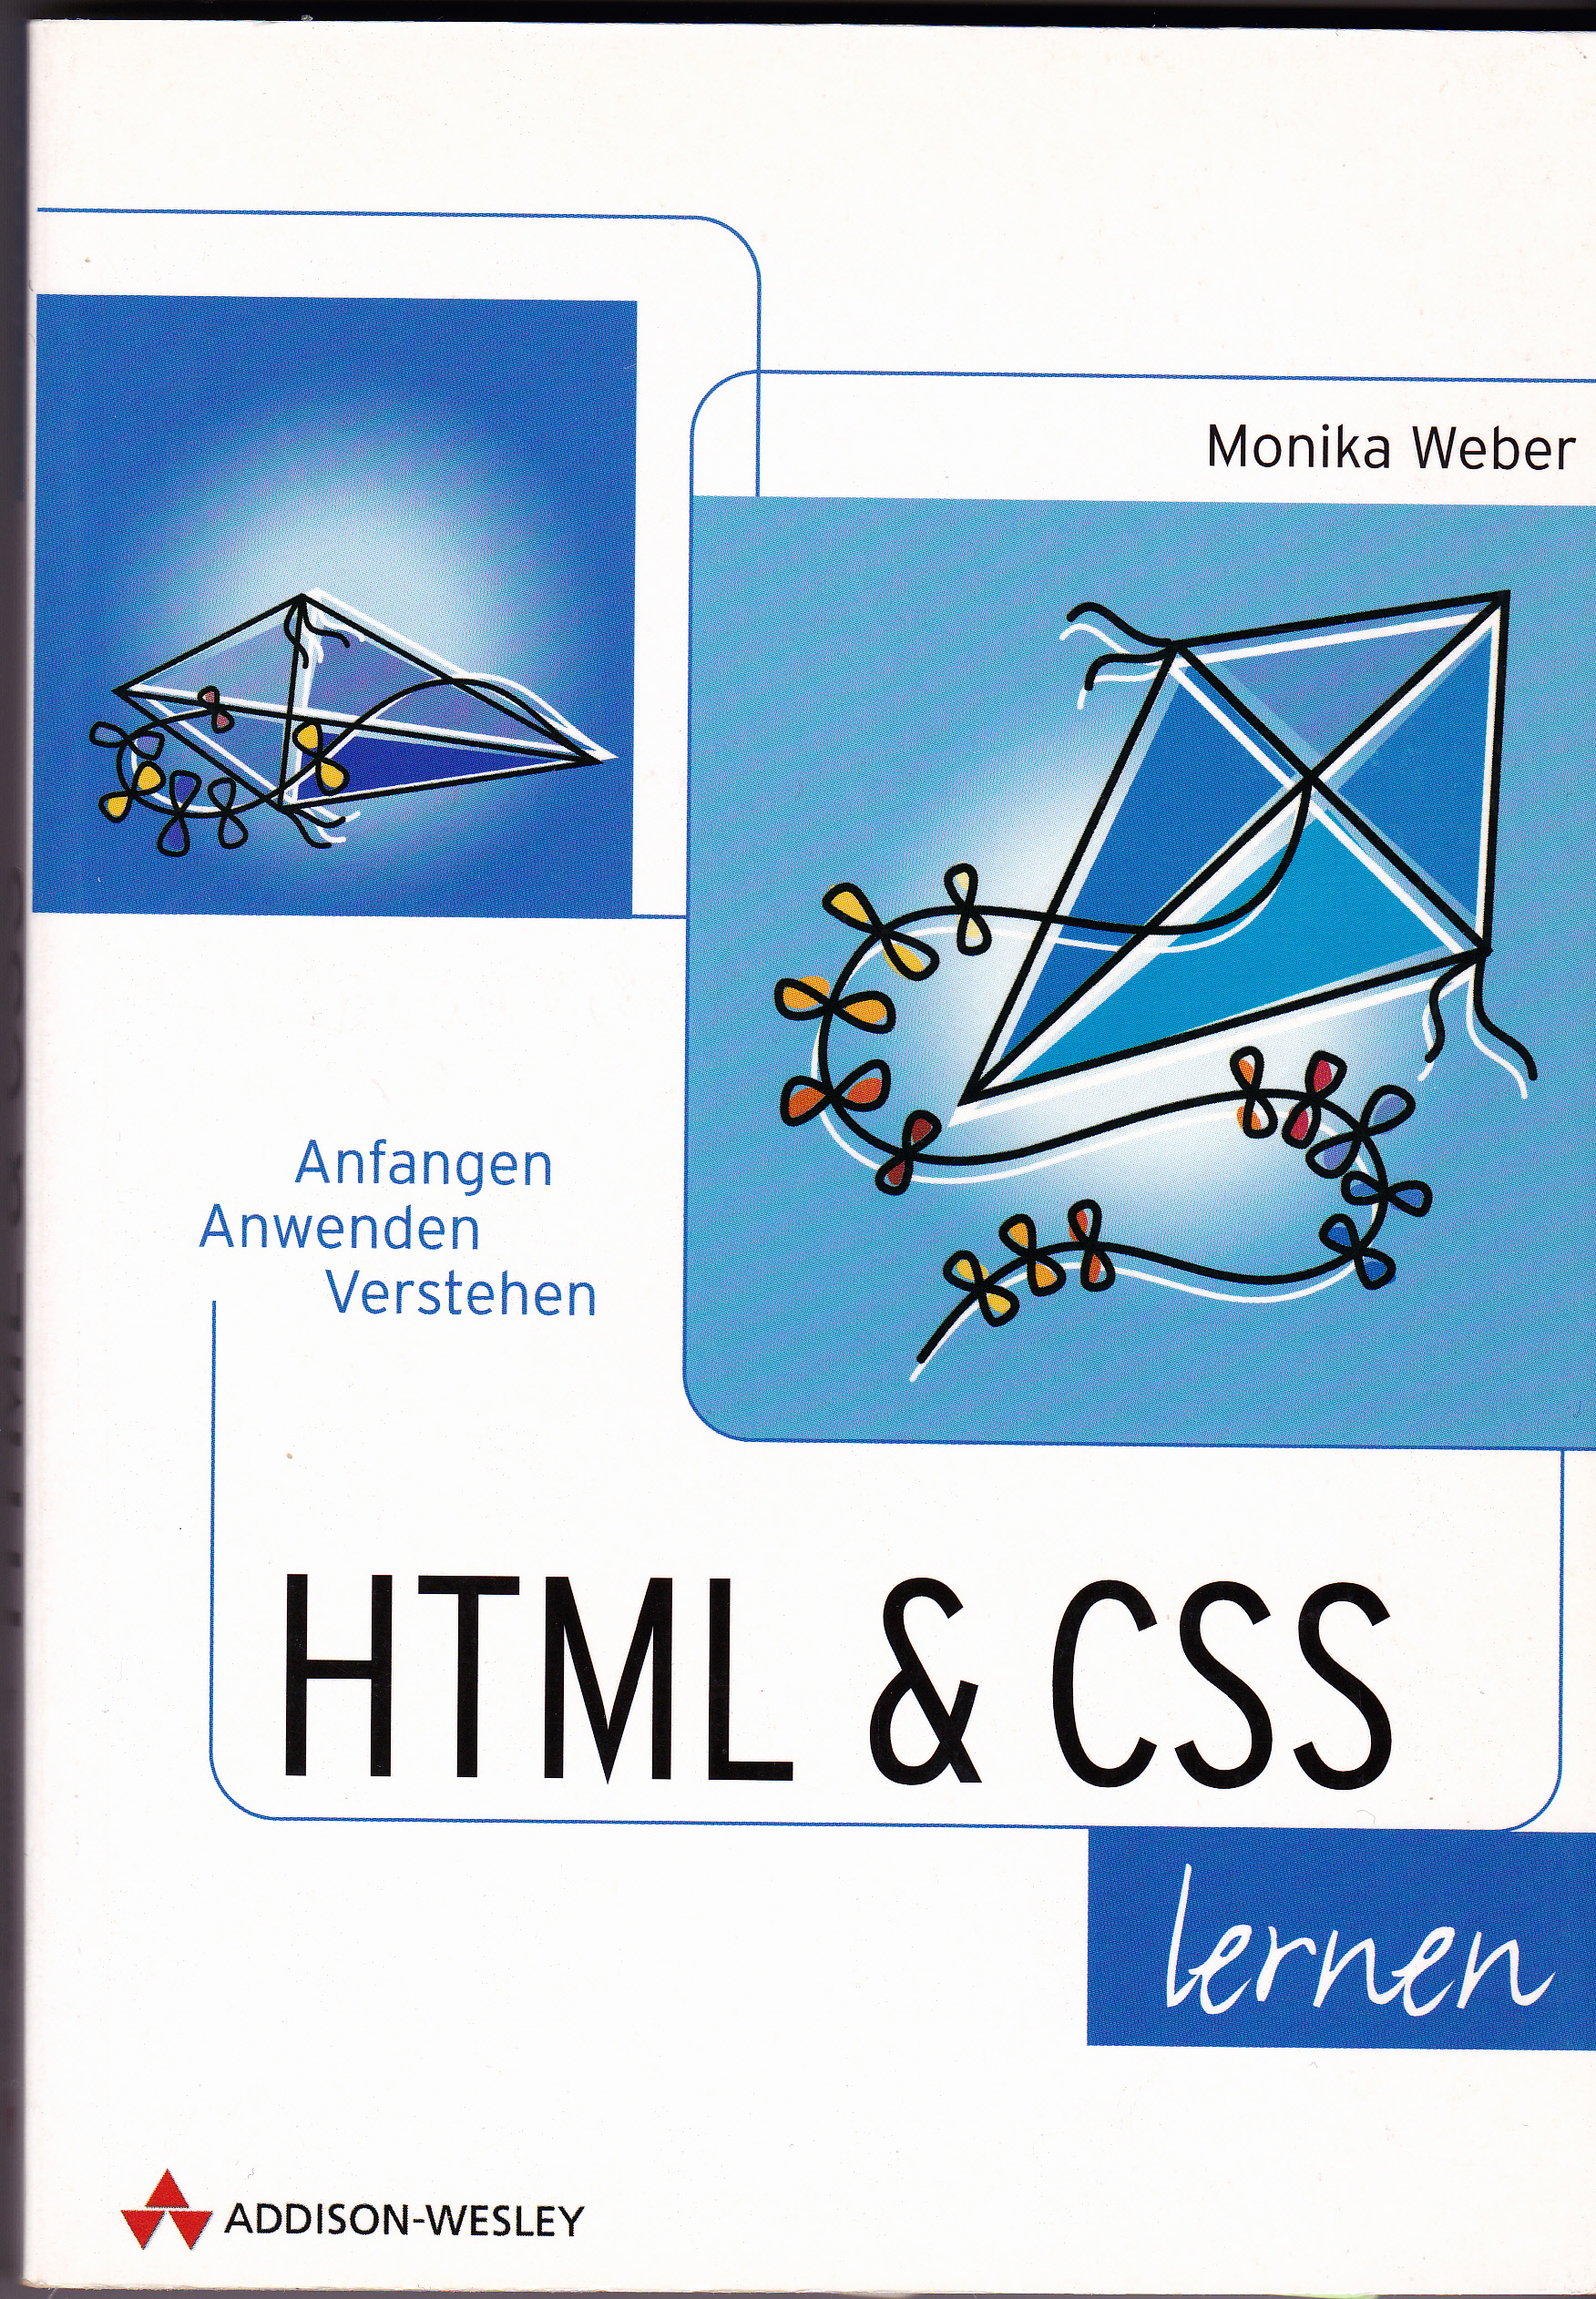 HTML & CSS von Monika Weber